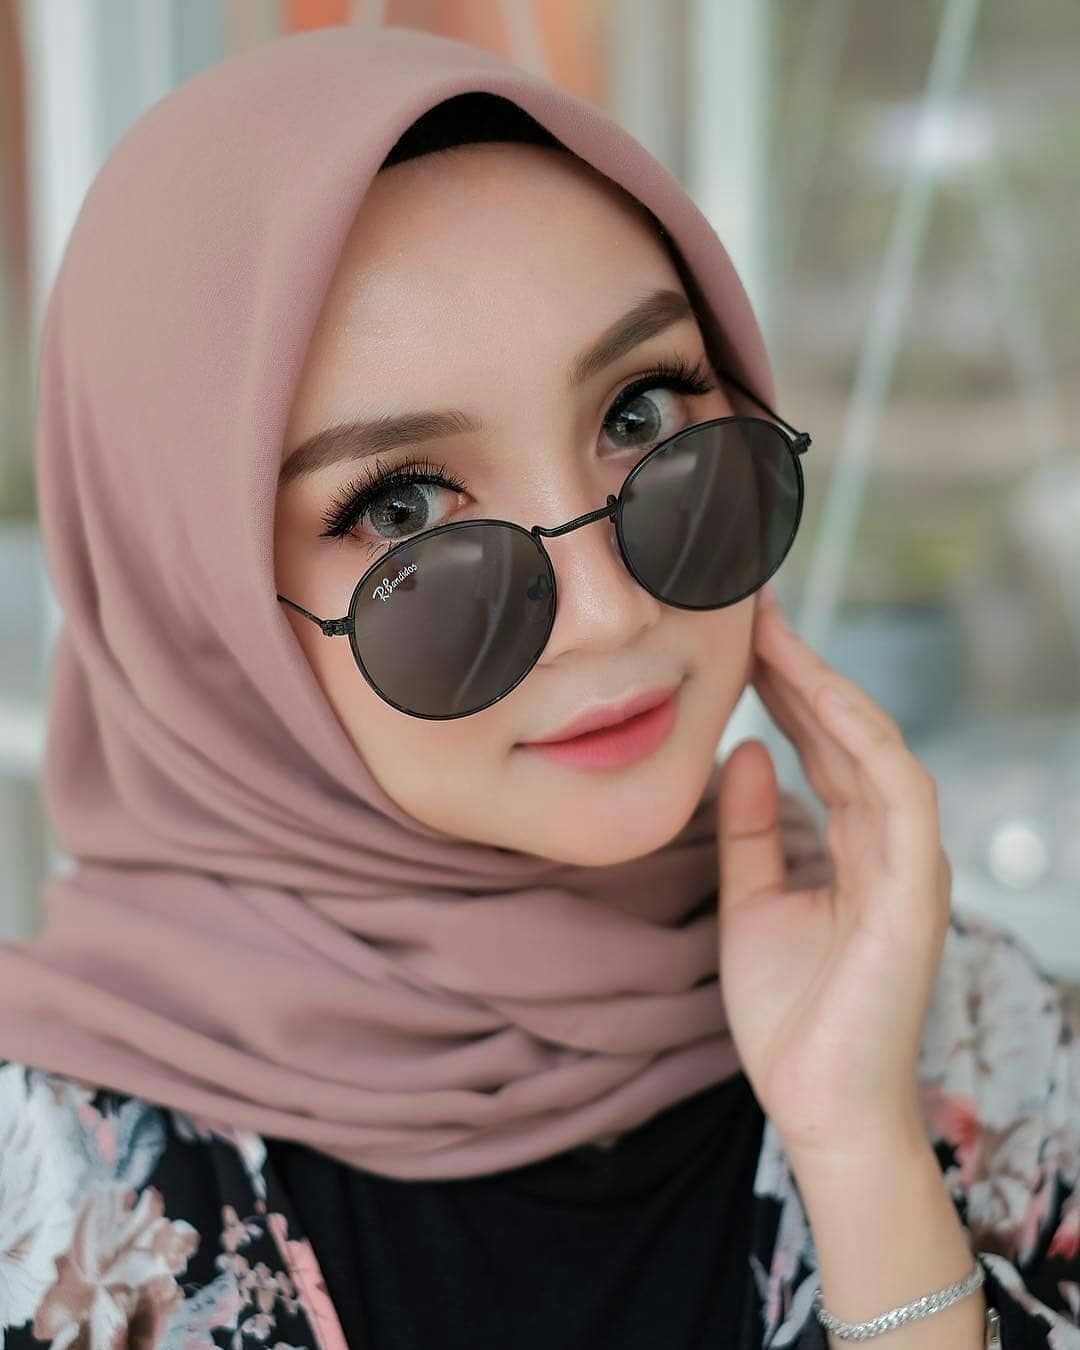 Wallpaper Hijab 2019 HD